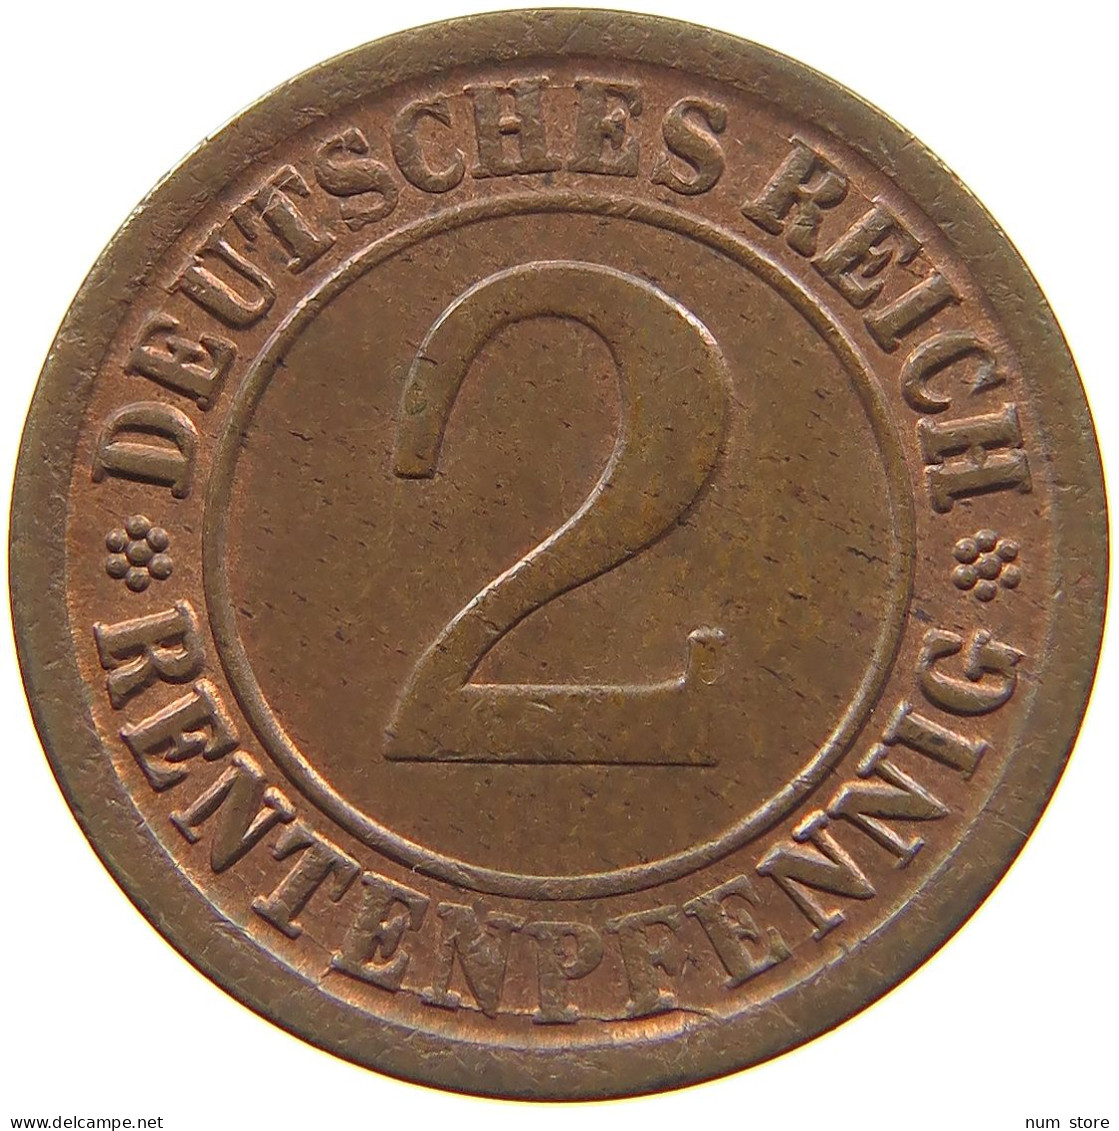 WEIMARER REPUBLIK 2 RENTENPFENNIG 1924 A  #MA 022576 - 2 Rentenpfennig & 2 Reichspfennig